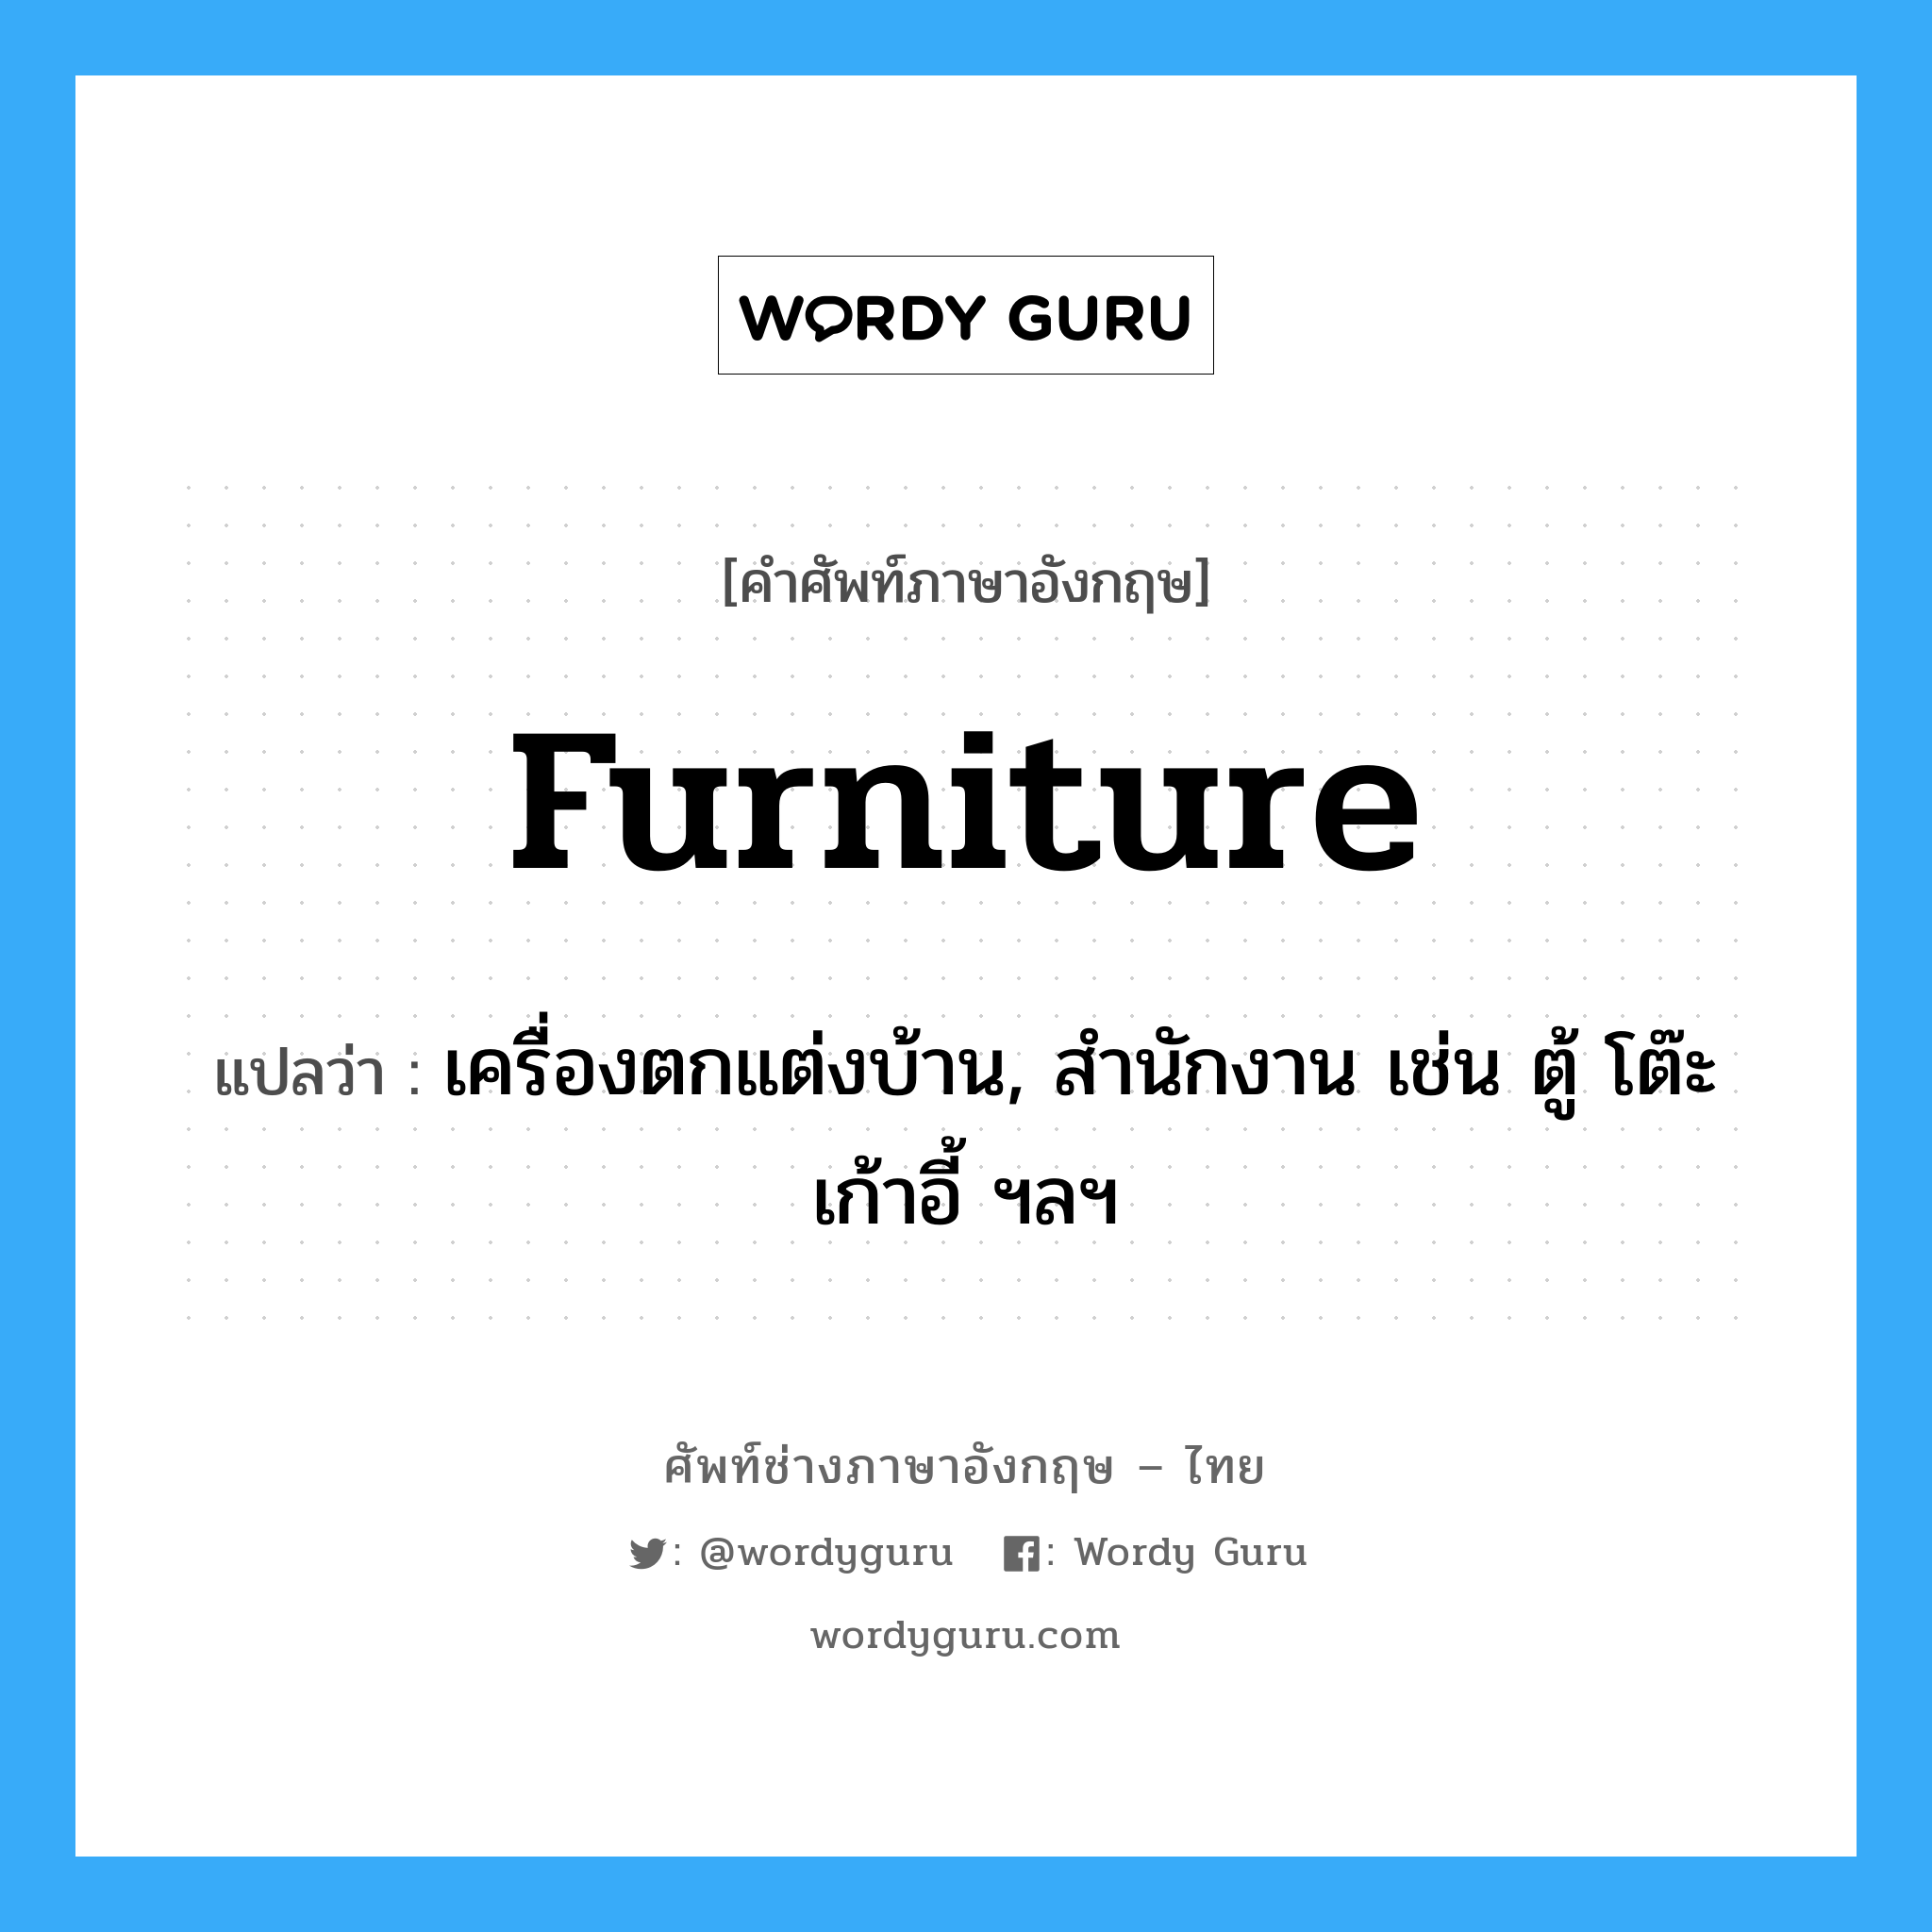 furniture แปลว่า?, คำศัพท์ช่างภาษาอังกฤษ - ไทย furniture คำศัพท์ภาษาอังกฤษ furniture แปลว่า เครื่องตกแต่งบ้าน, สำนักงาน เช่น ตู้ โต๊ะ เก้าอี้ ฯลฯ